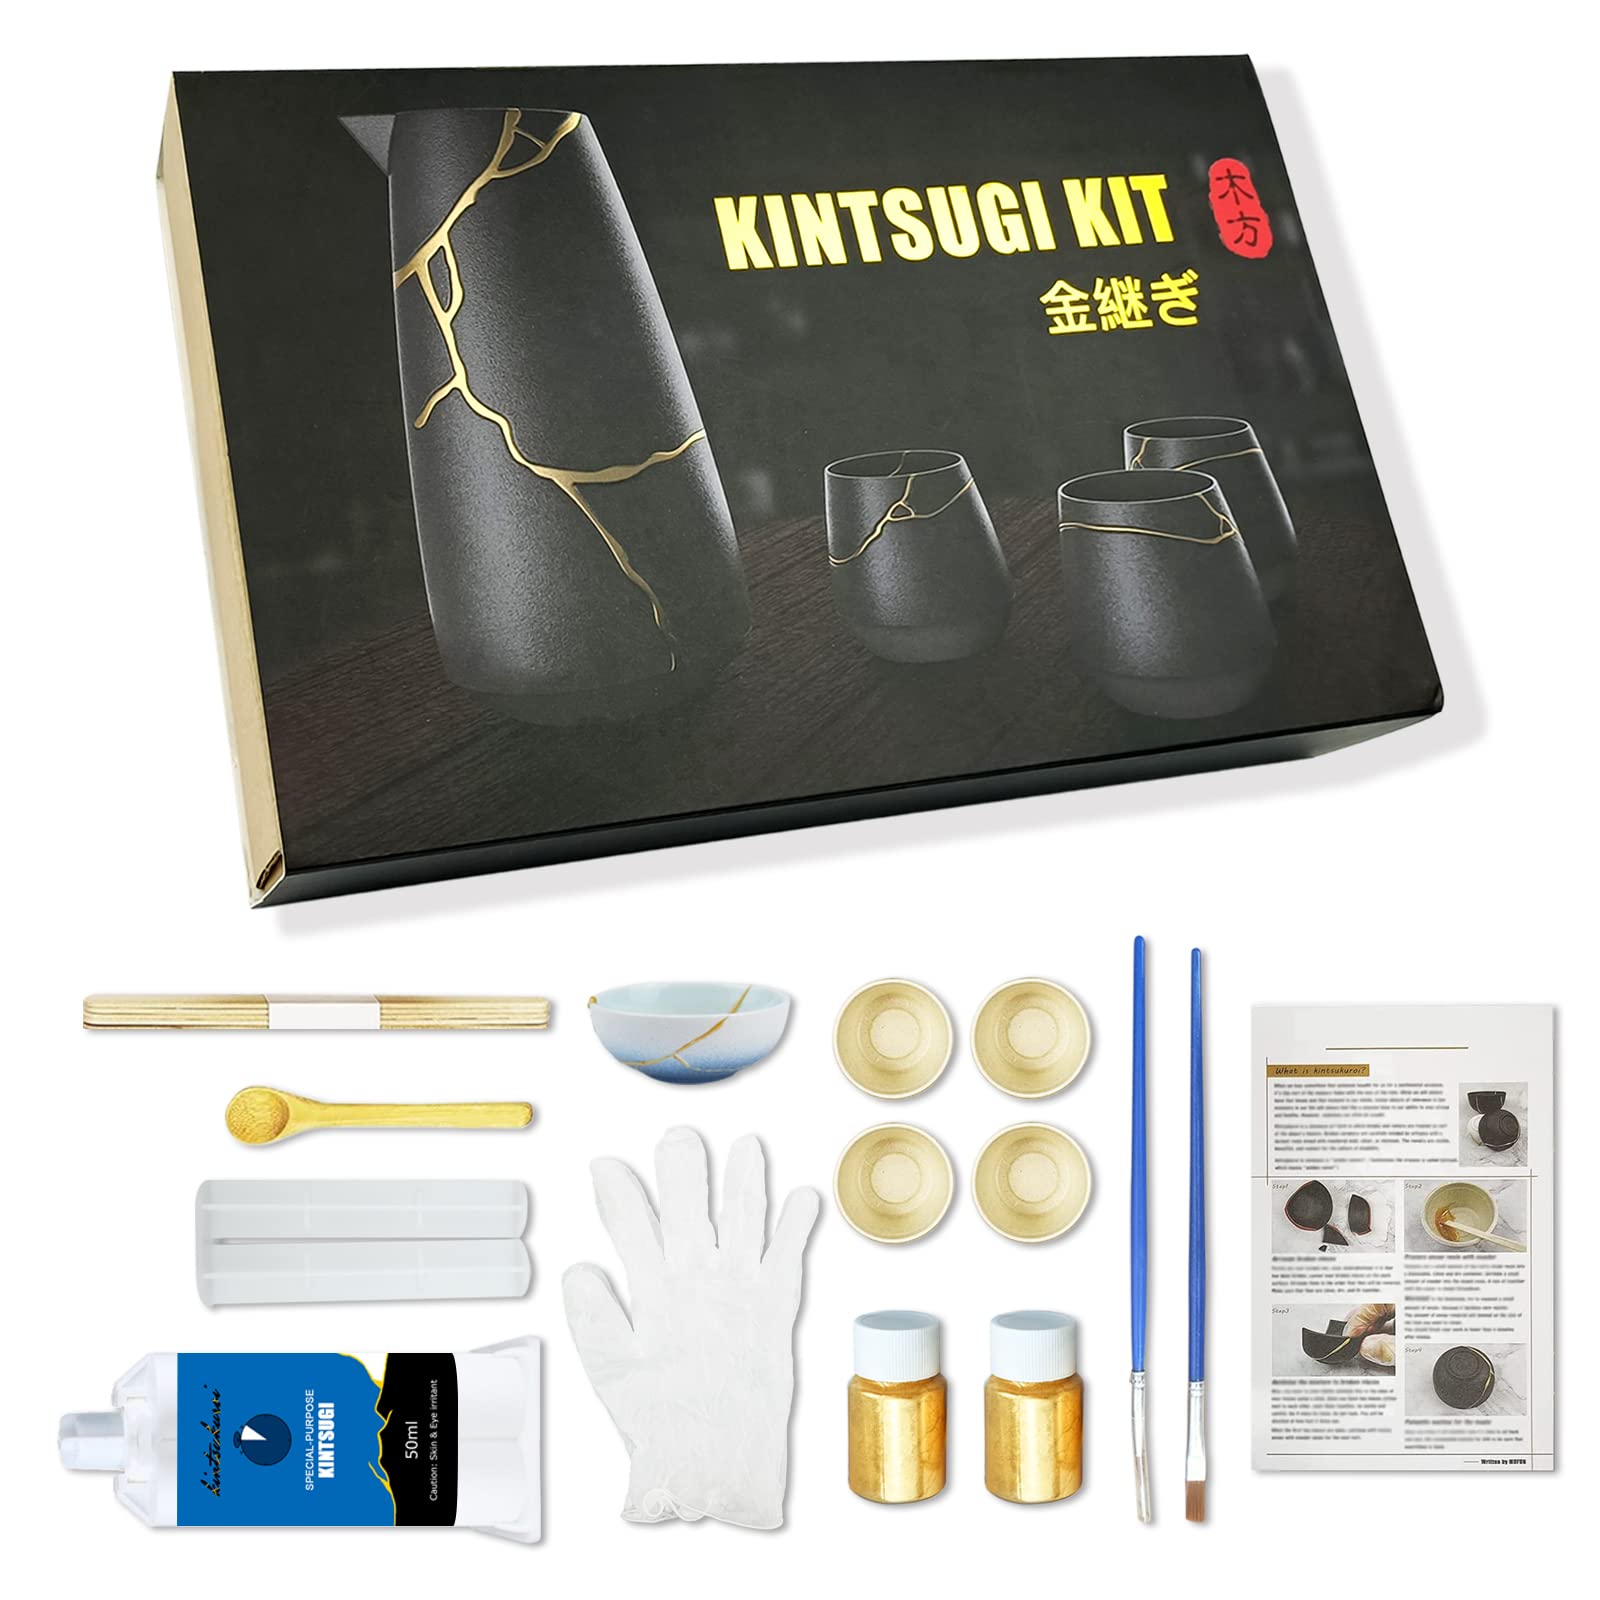 Kintsugi Repair Kit. with professional gold made in Japan, kintsugi kit 